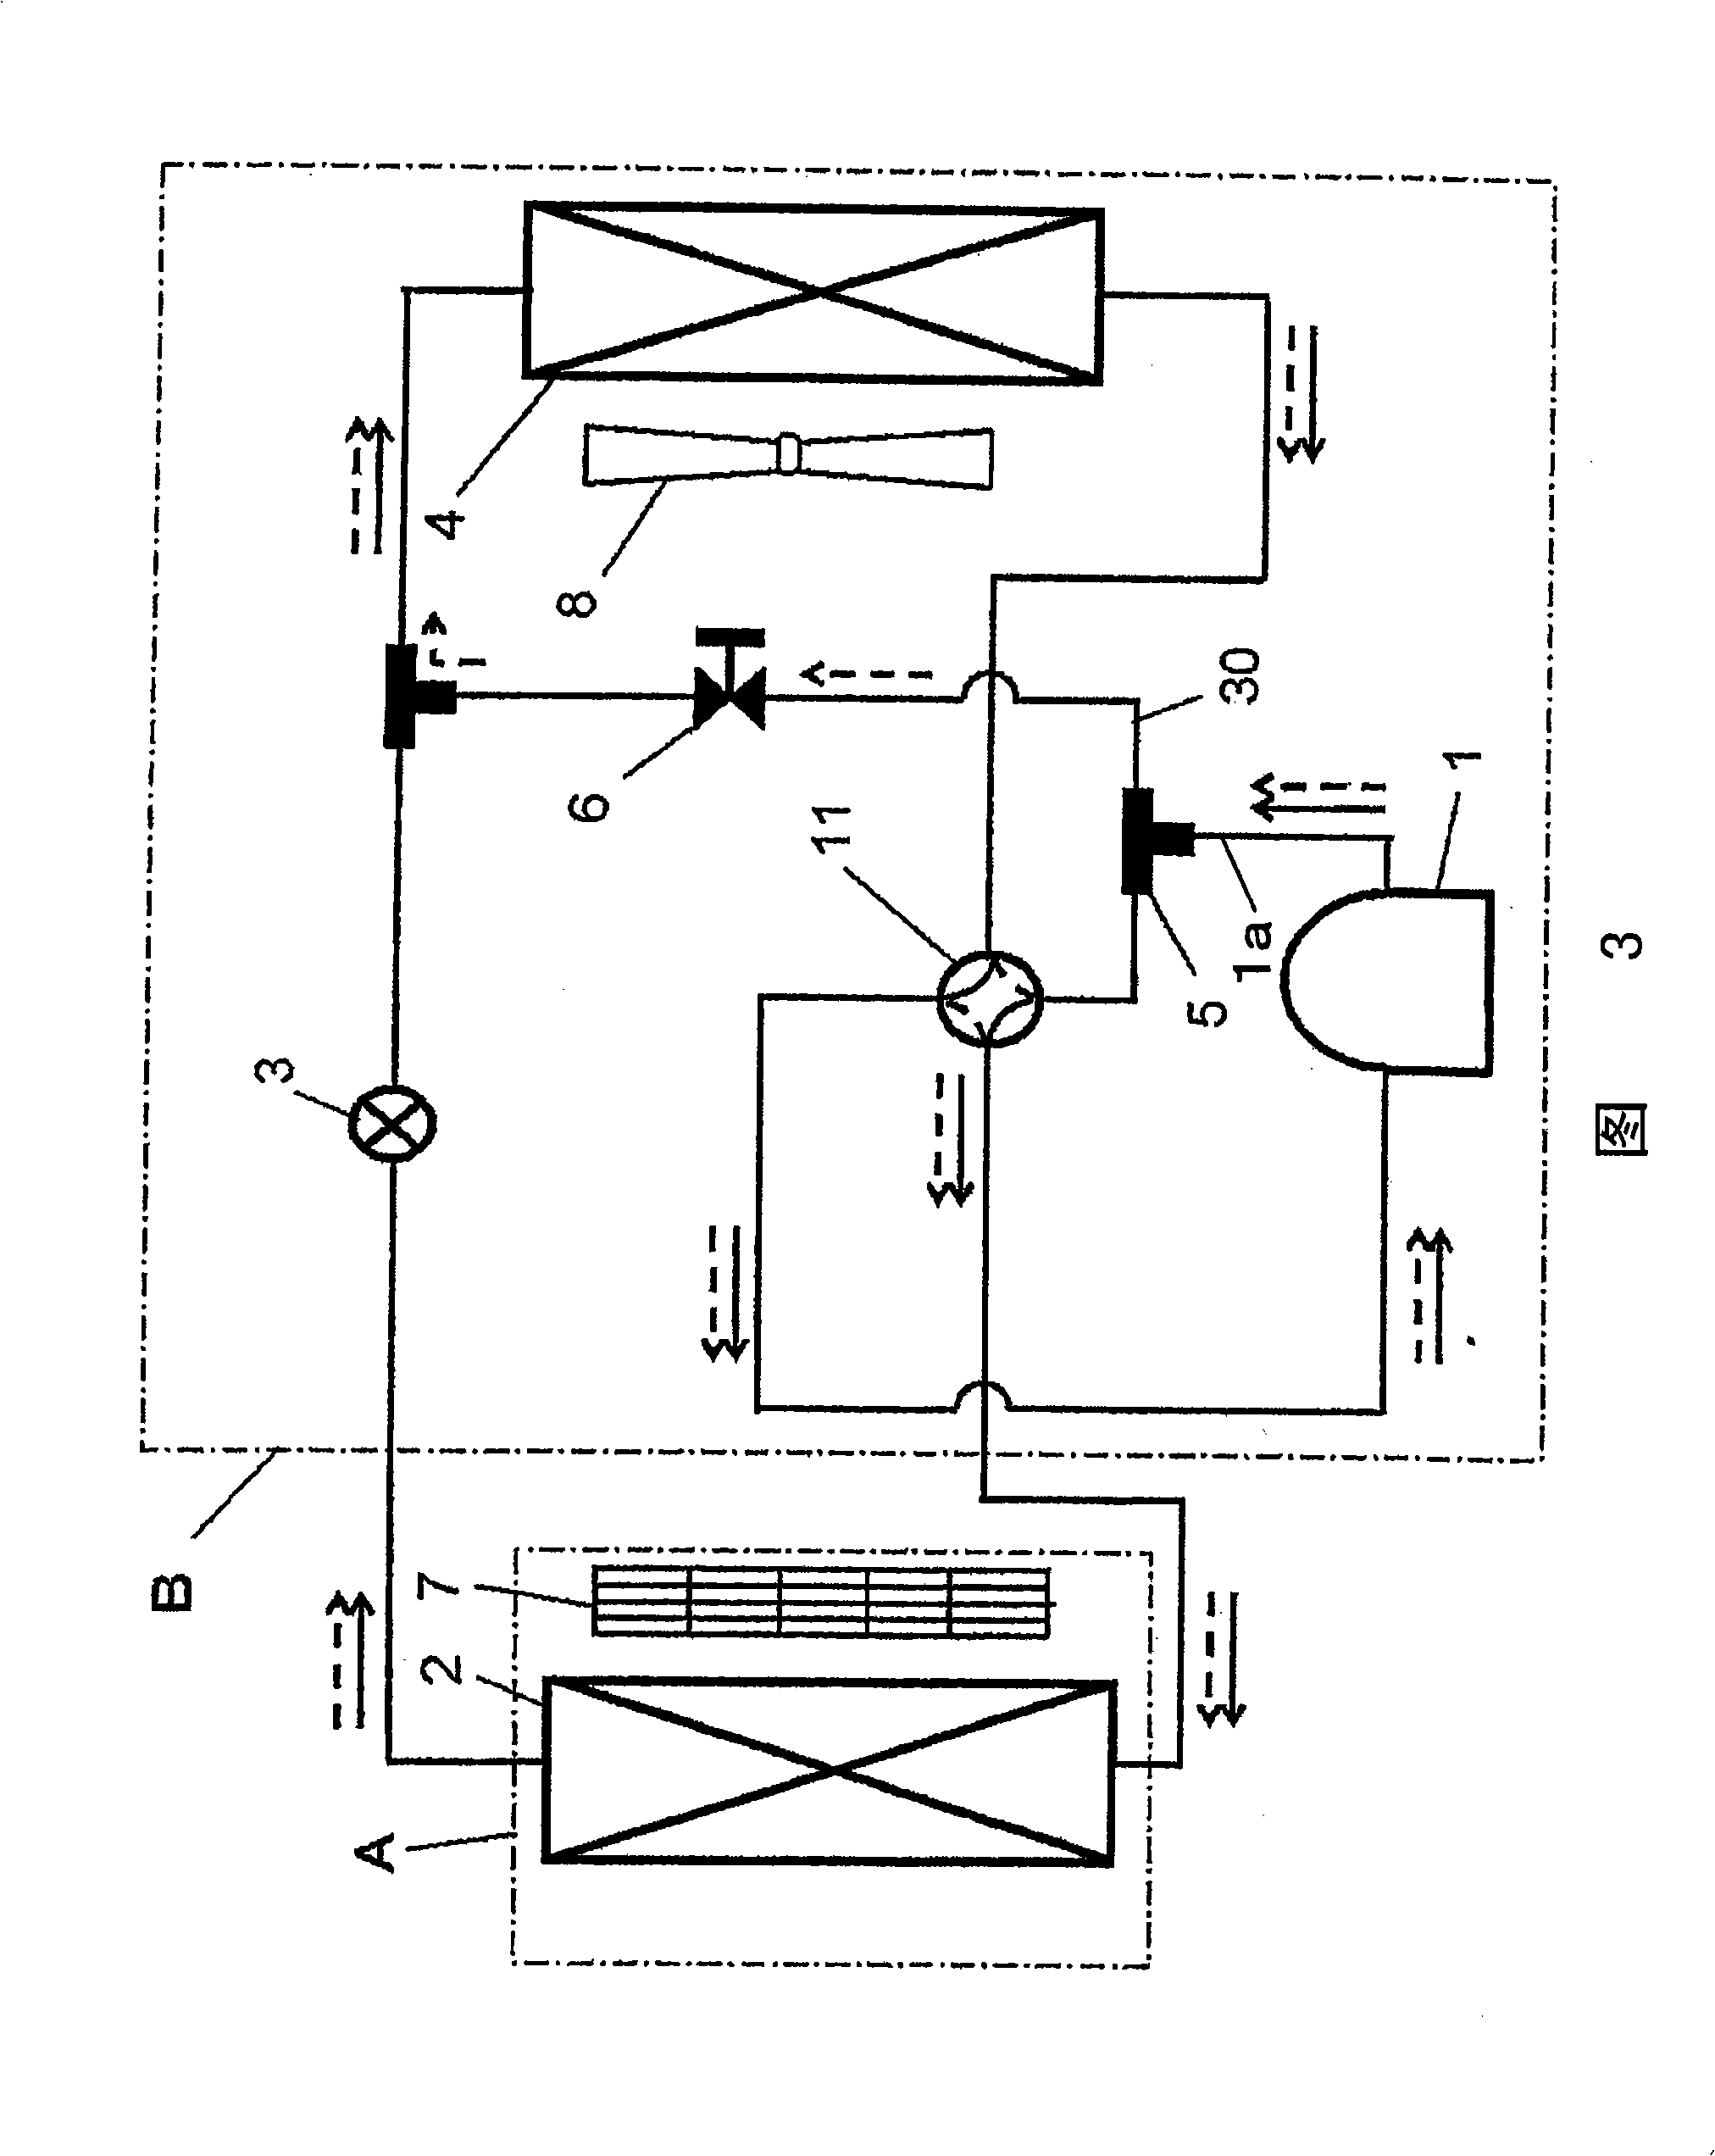 Refrigeration cycle apparatus